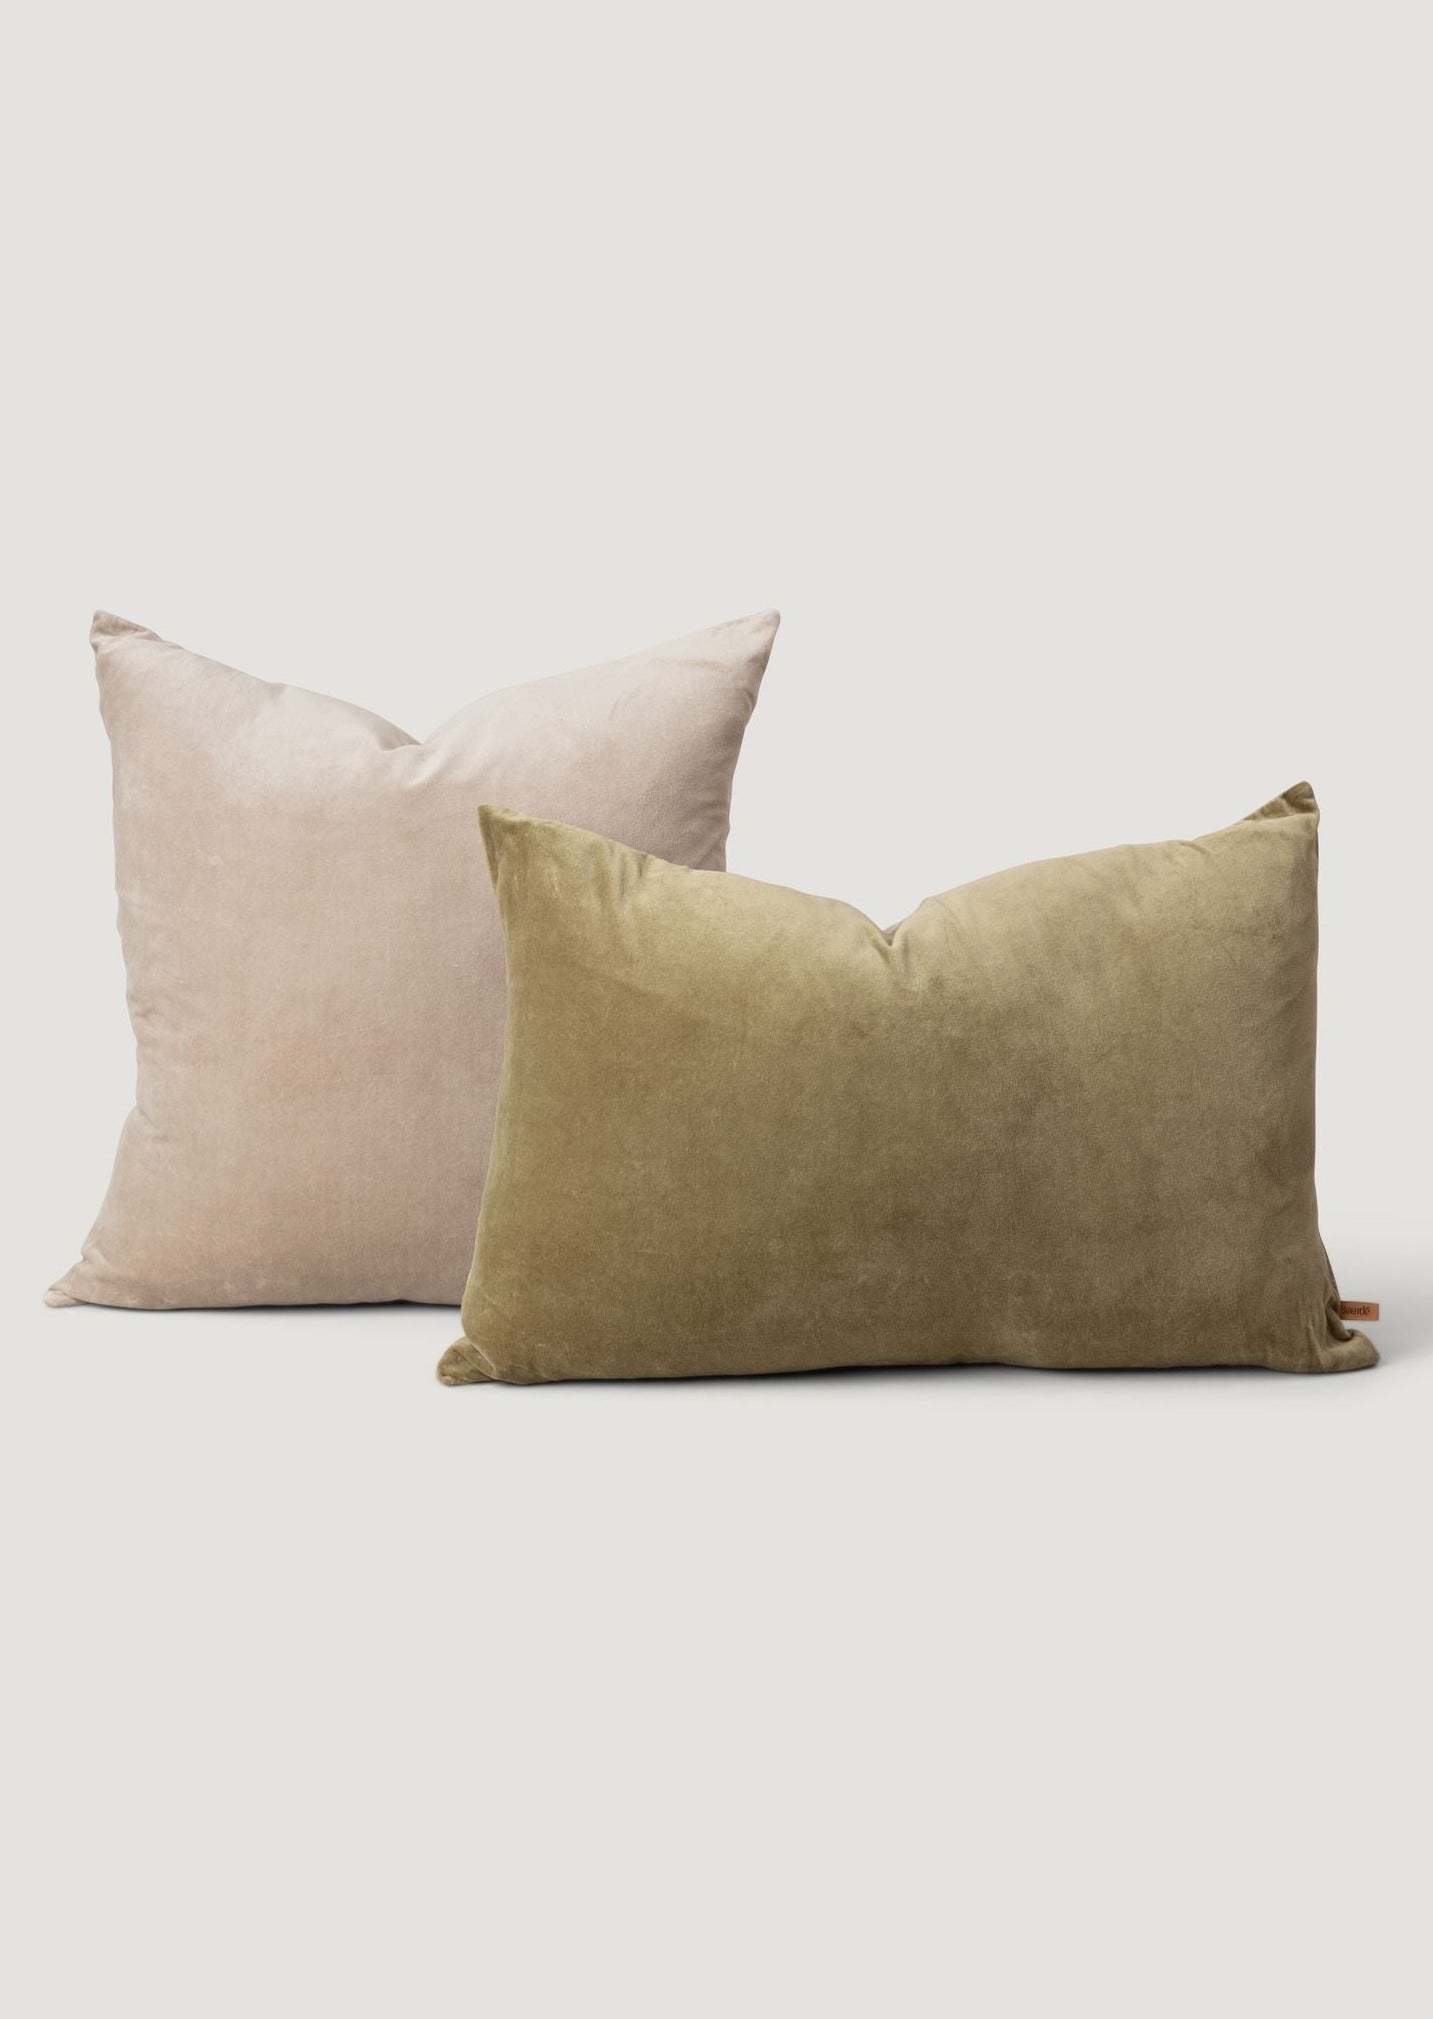 Velvet Pillows in Light Gray and Olive Green